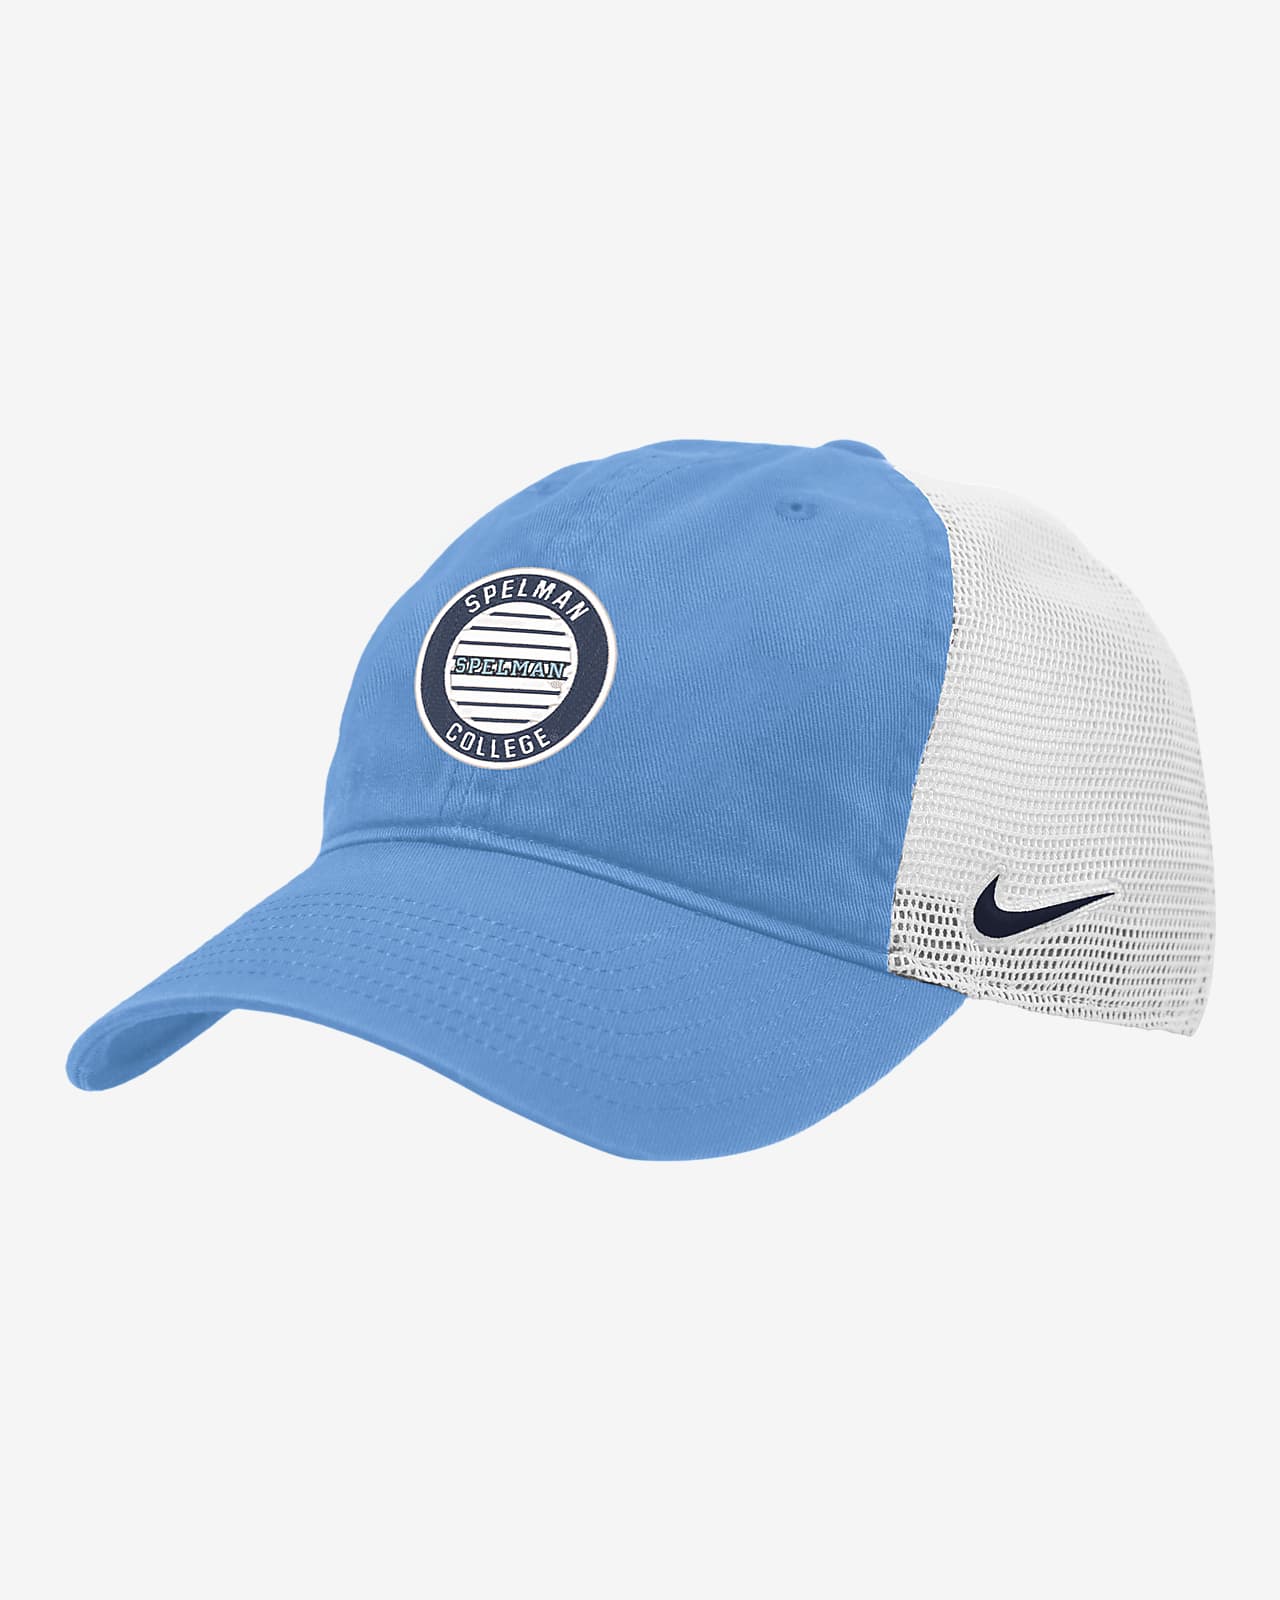 Spelman Heritage86 Nike College Trucker Hat